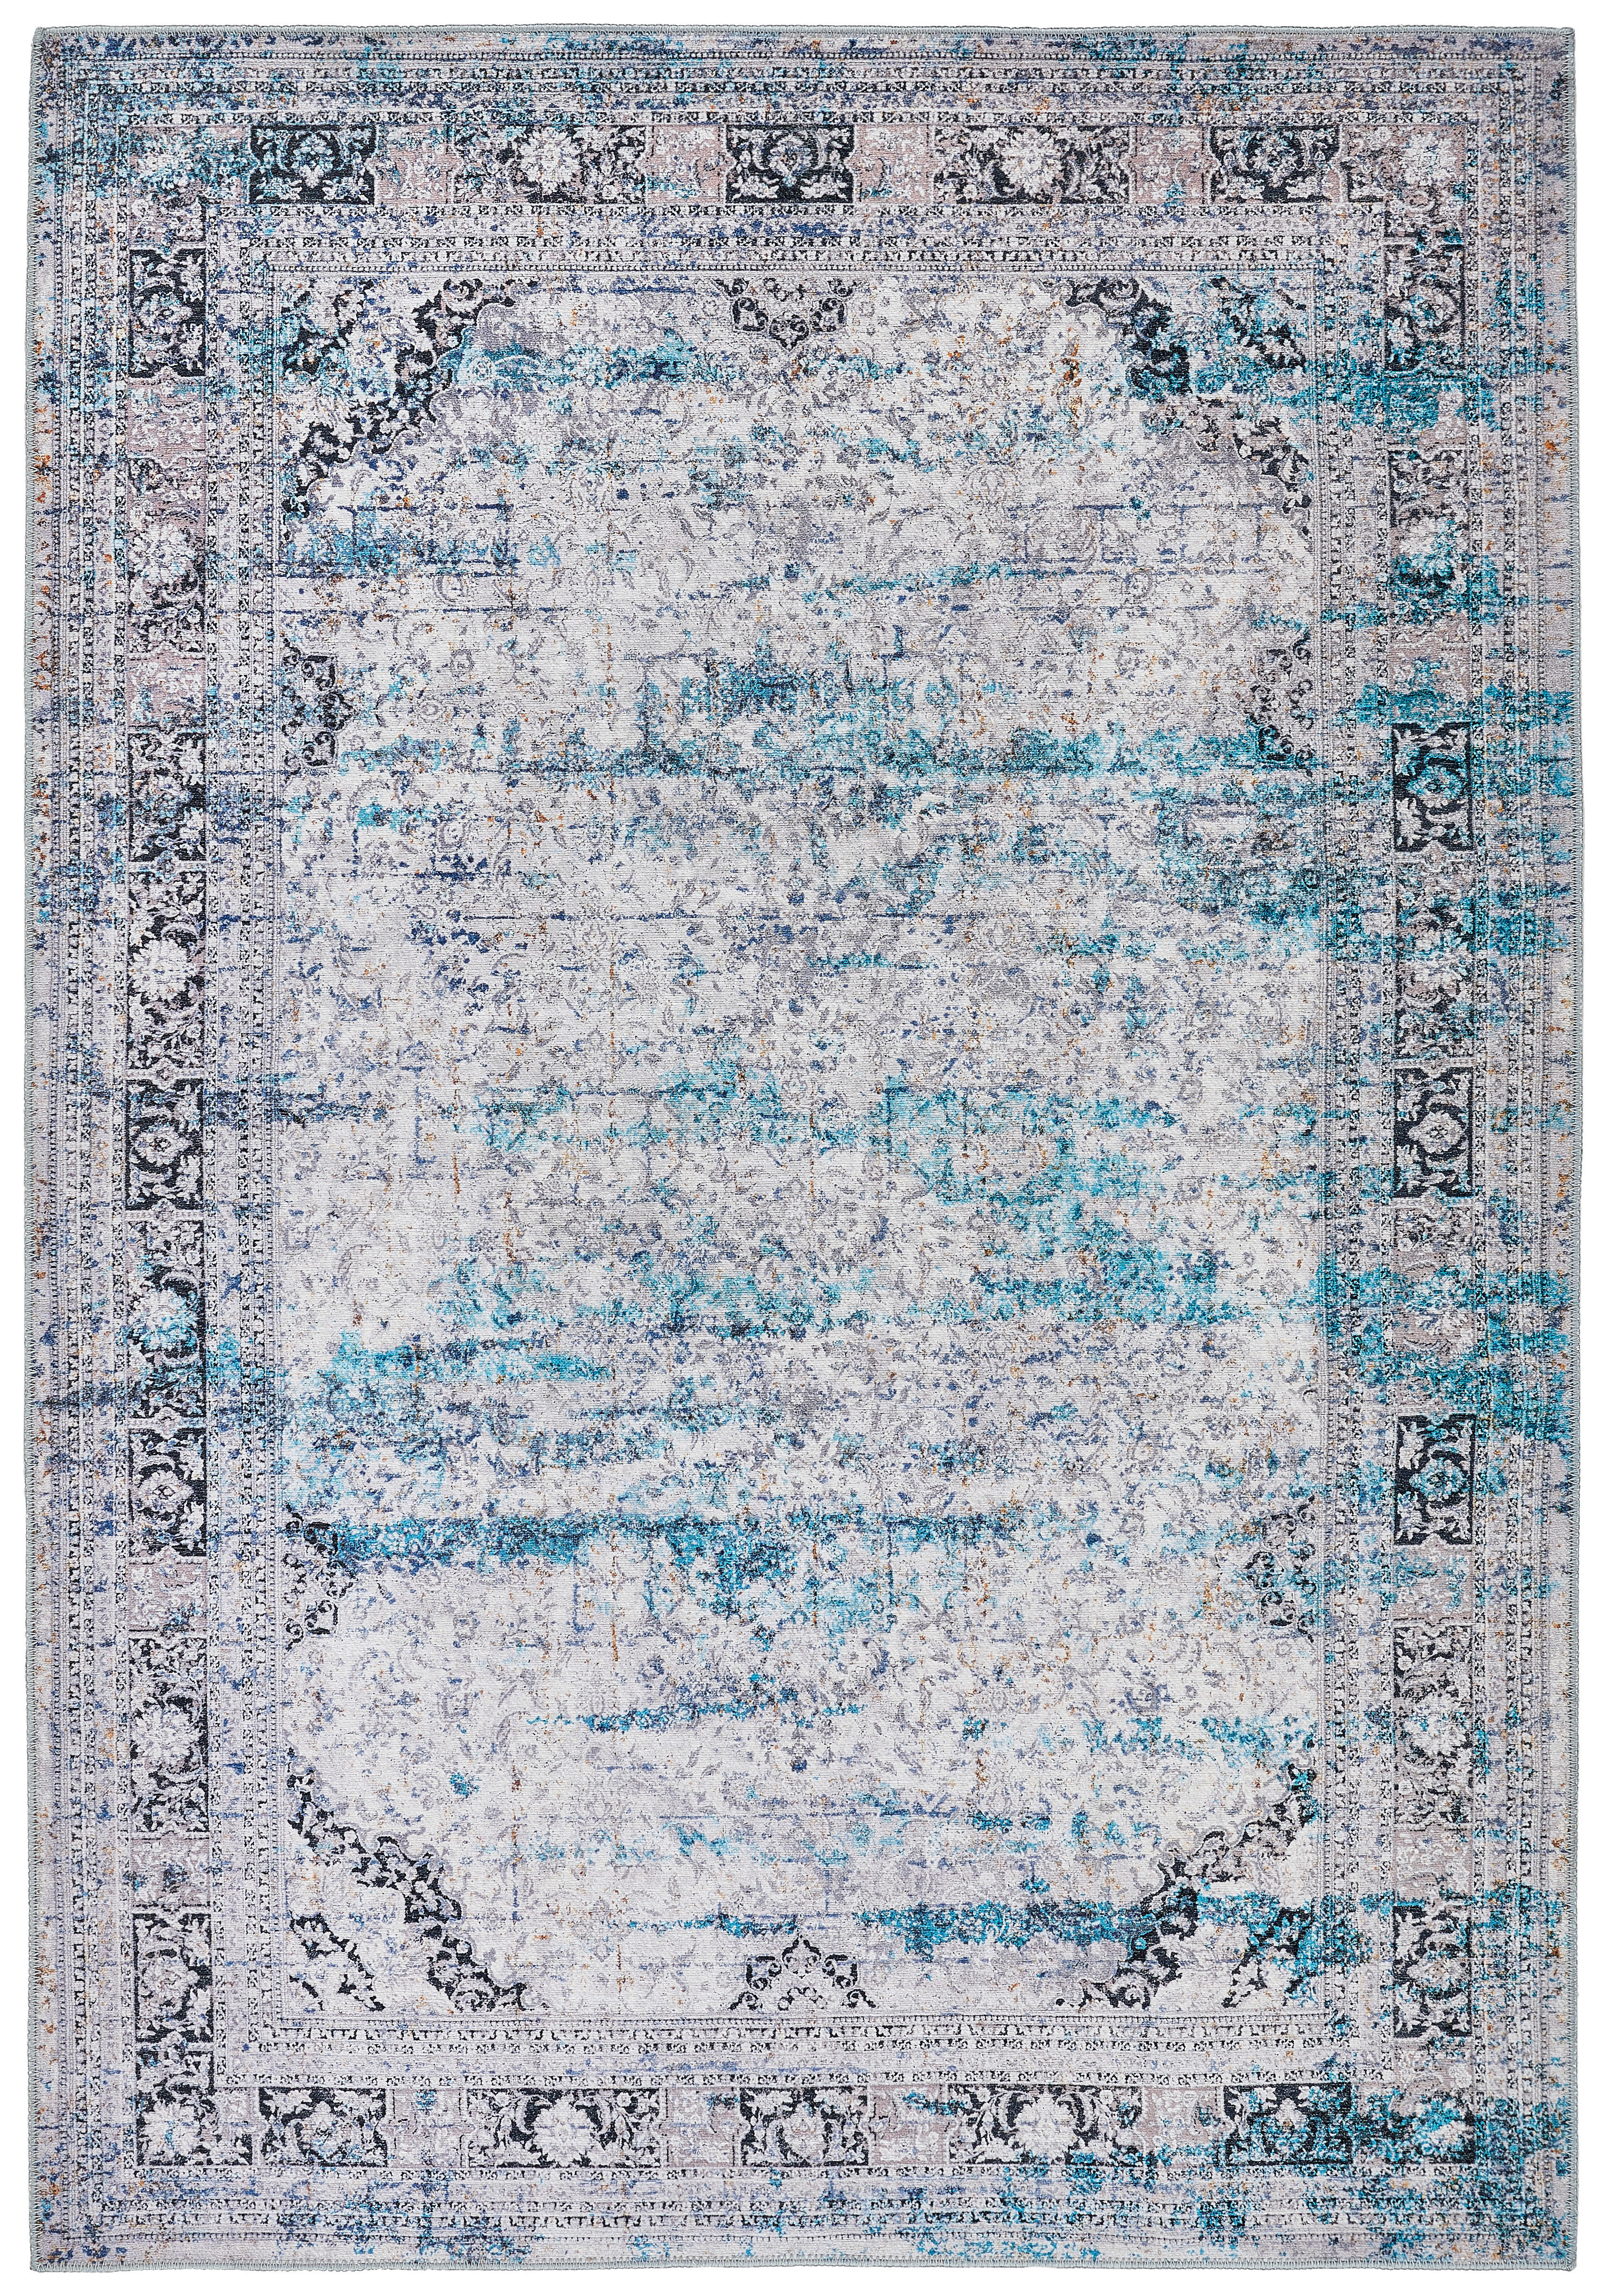 VINTAGE SZŐNYEG  Belvedere  - Szürke/Kék, Lifestyle, Textil (160/230cm) - Novel